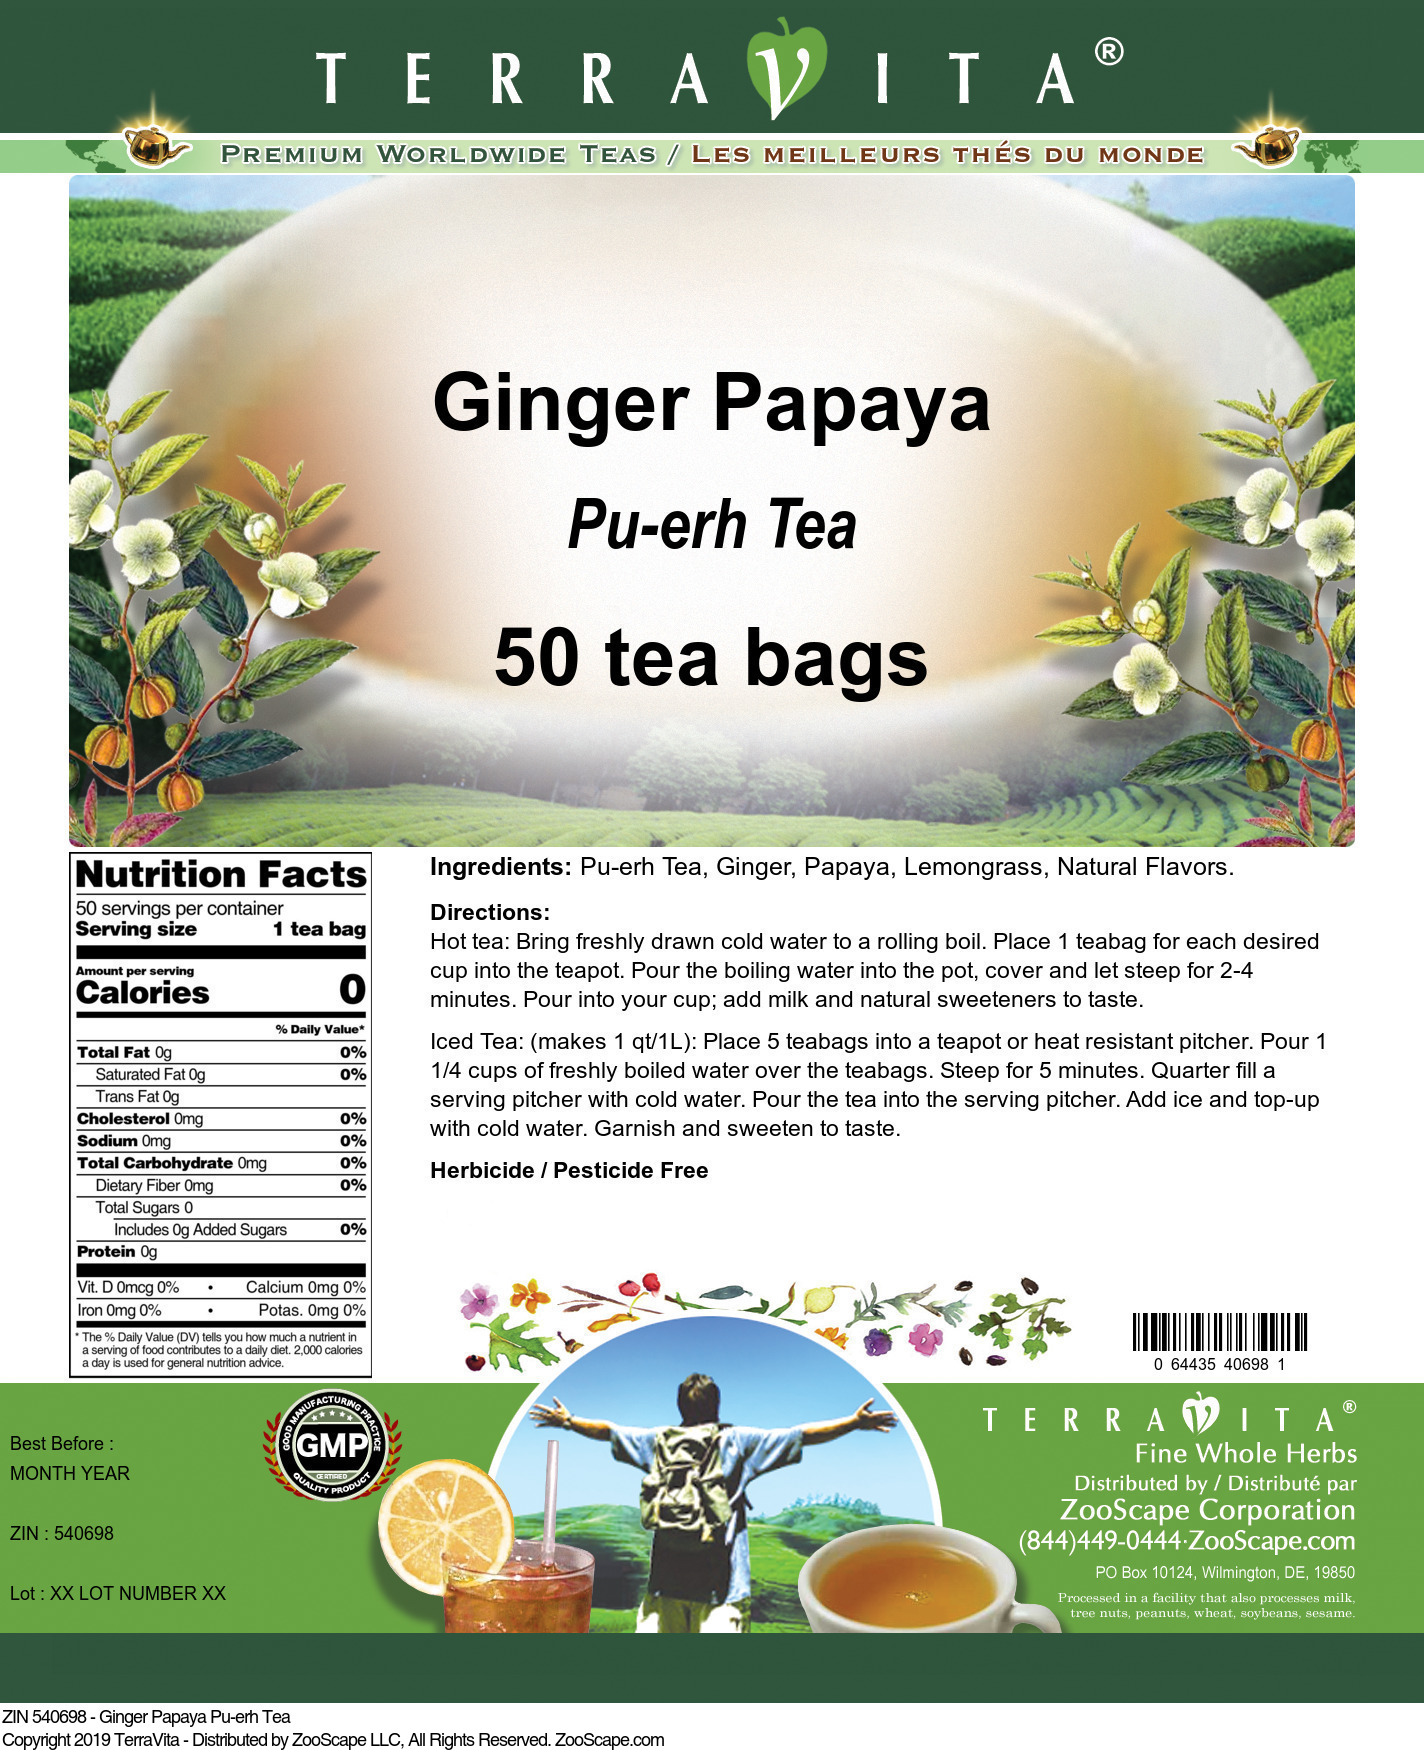 Ginger Papaya Pu-erh Tea - Label